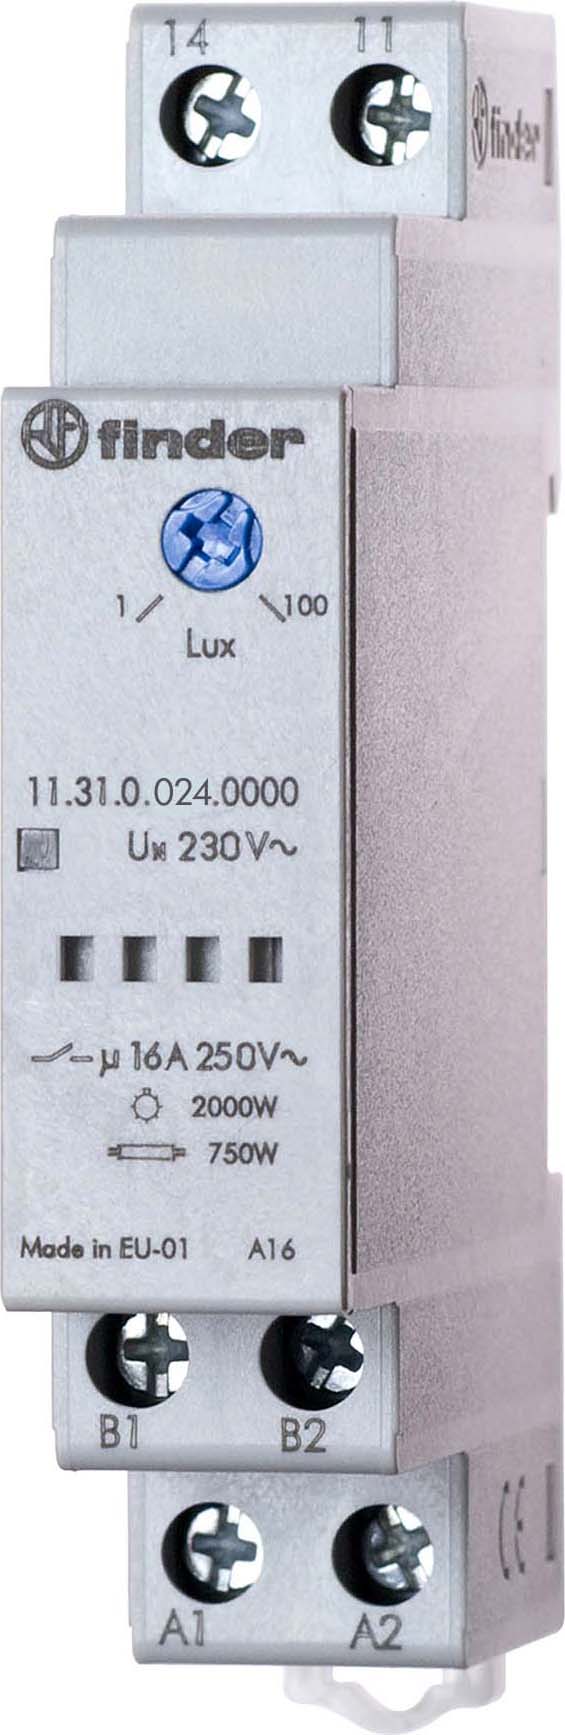 Finder Dämmerungsschalter 1-100Lux 16A 250VAC 11.31.0.024.0000 - 113100000000